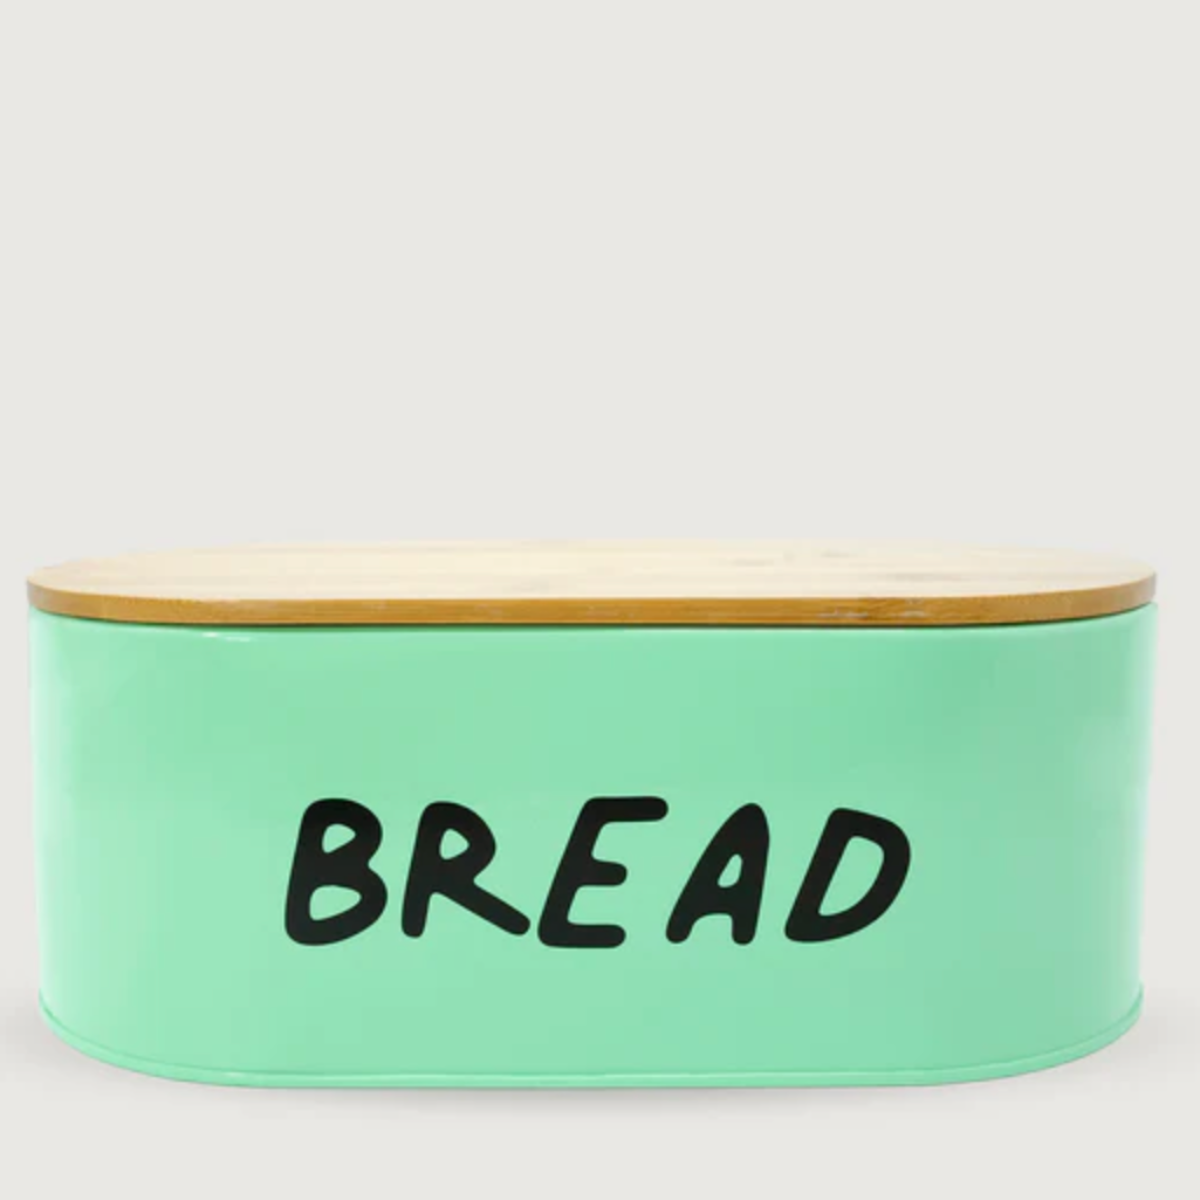 Enamel Bread/Parāoa Bin